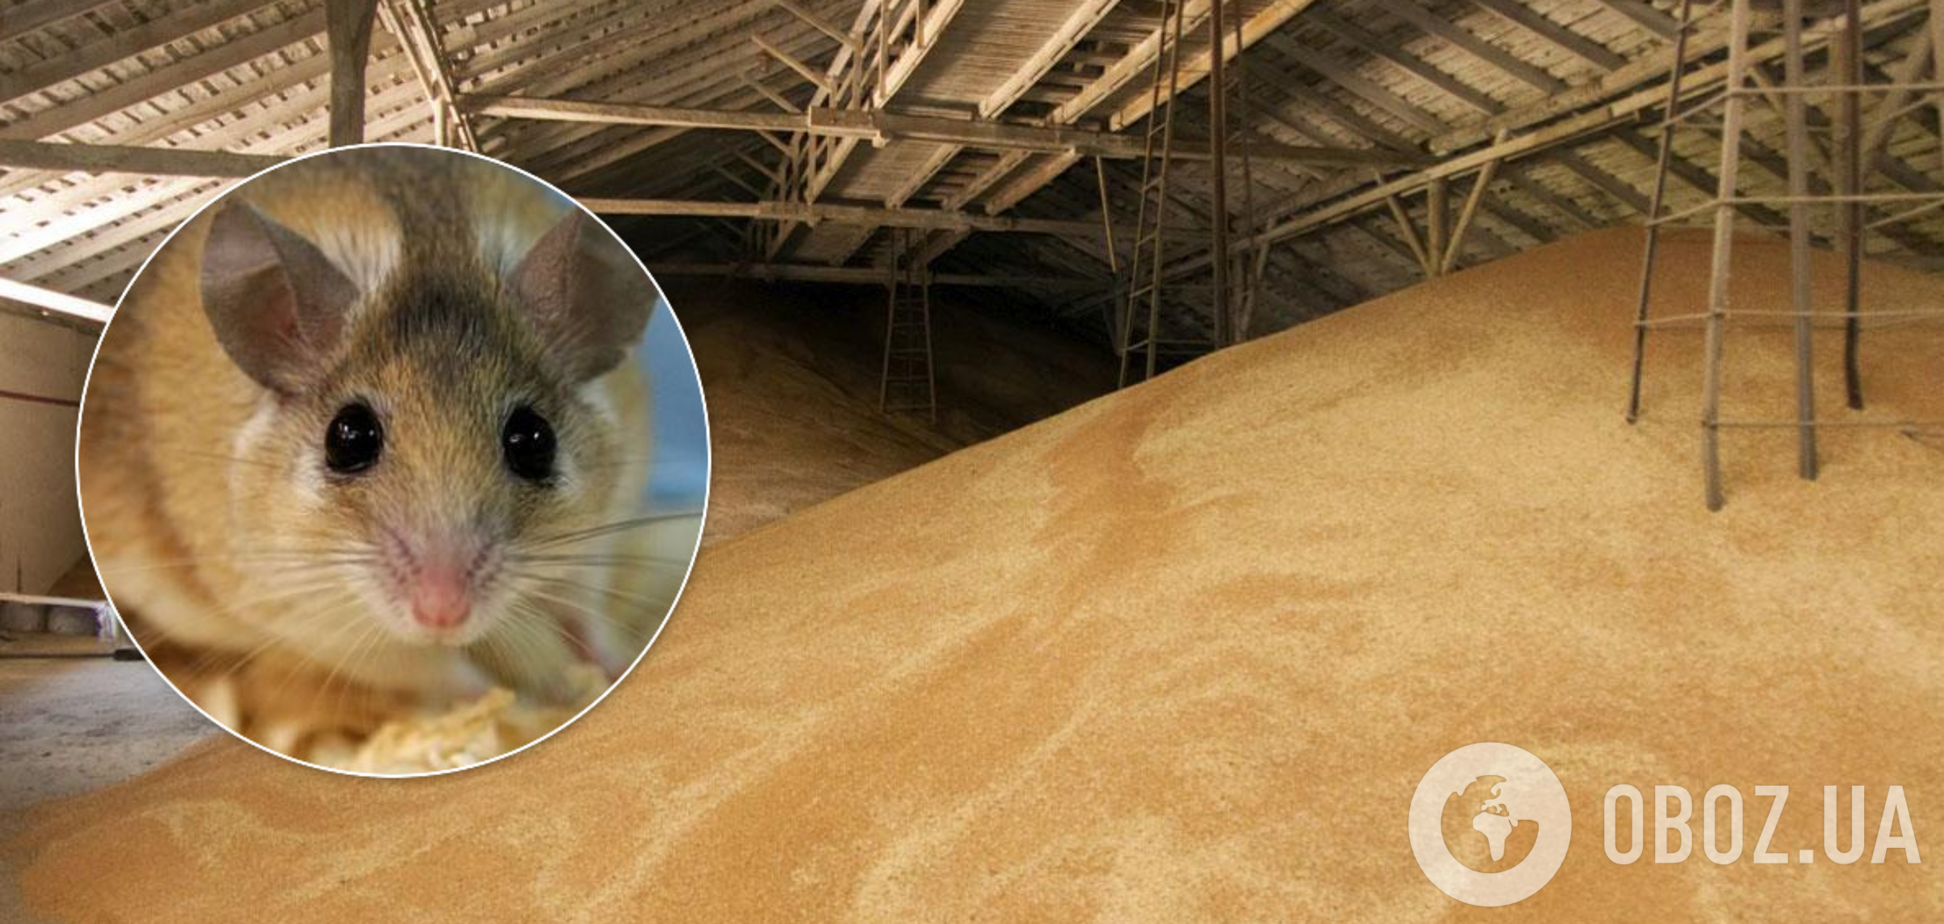 Миші з'їли зерно й не лише: у Держрезерві викрили найнахабніші схеми крадіжок